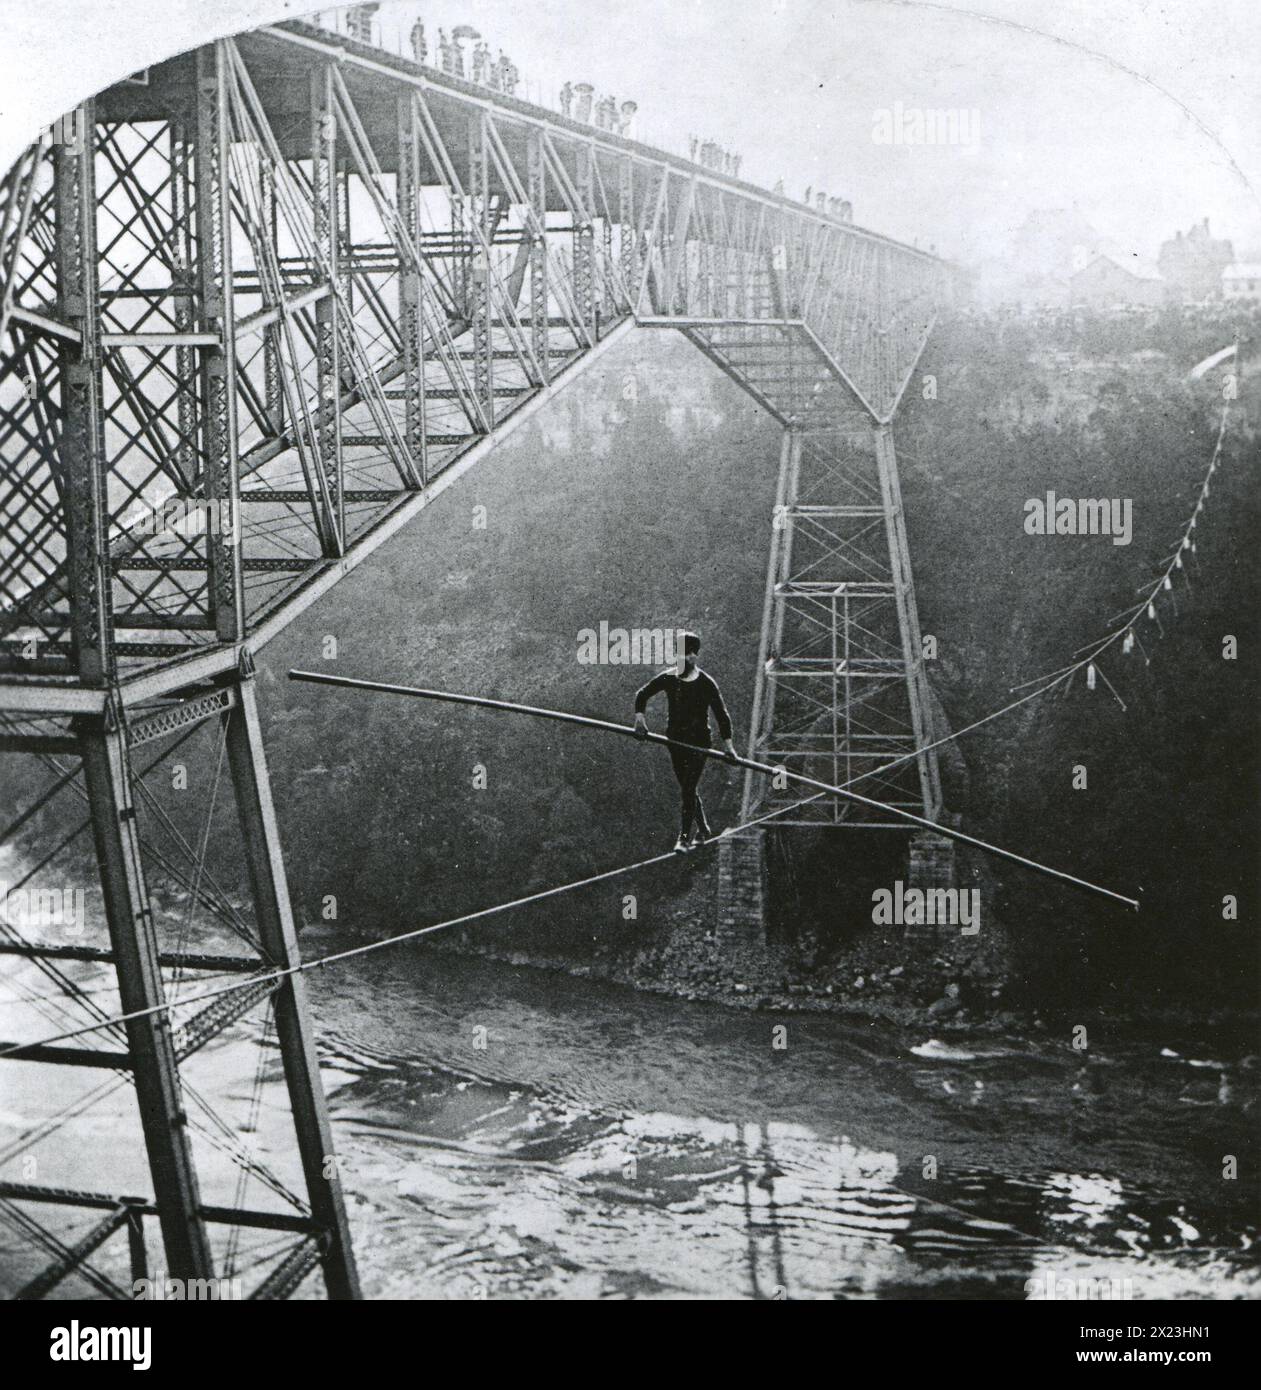 1890 - 'The Bright face of danger' - Samuel J. Dixon traverse Niagara Falls sur un fil de 7/8 pouces. Dixon était un célèbre marcheur de corde raide du Canada.. Banque D'Images